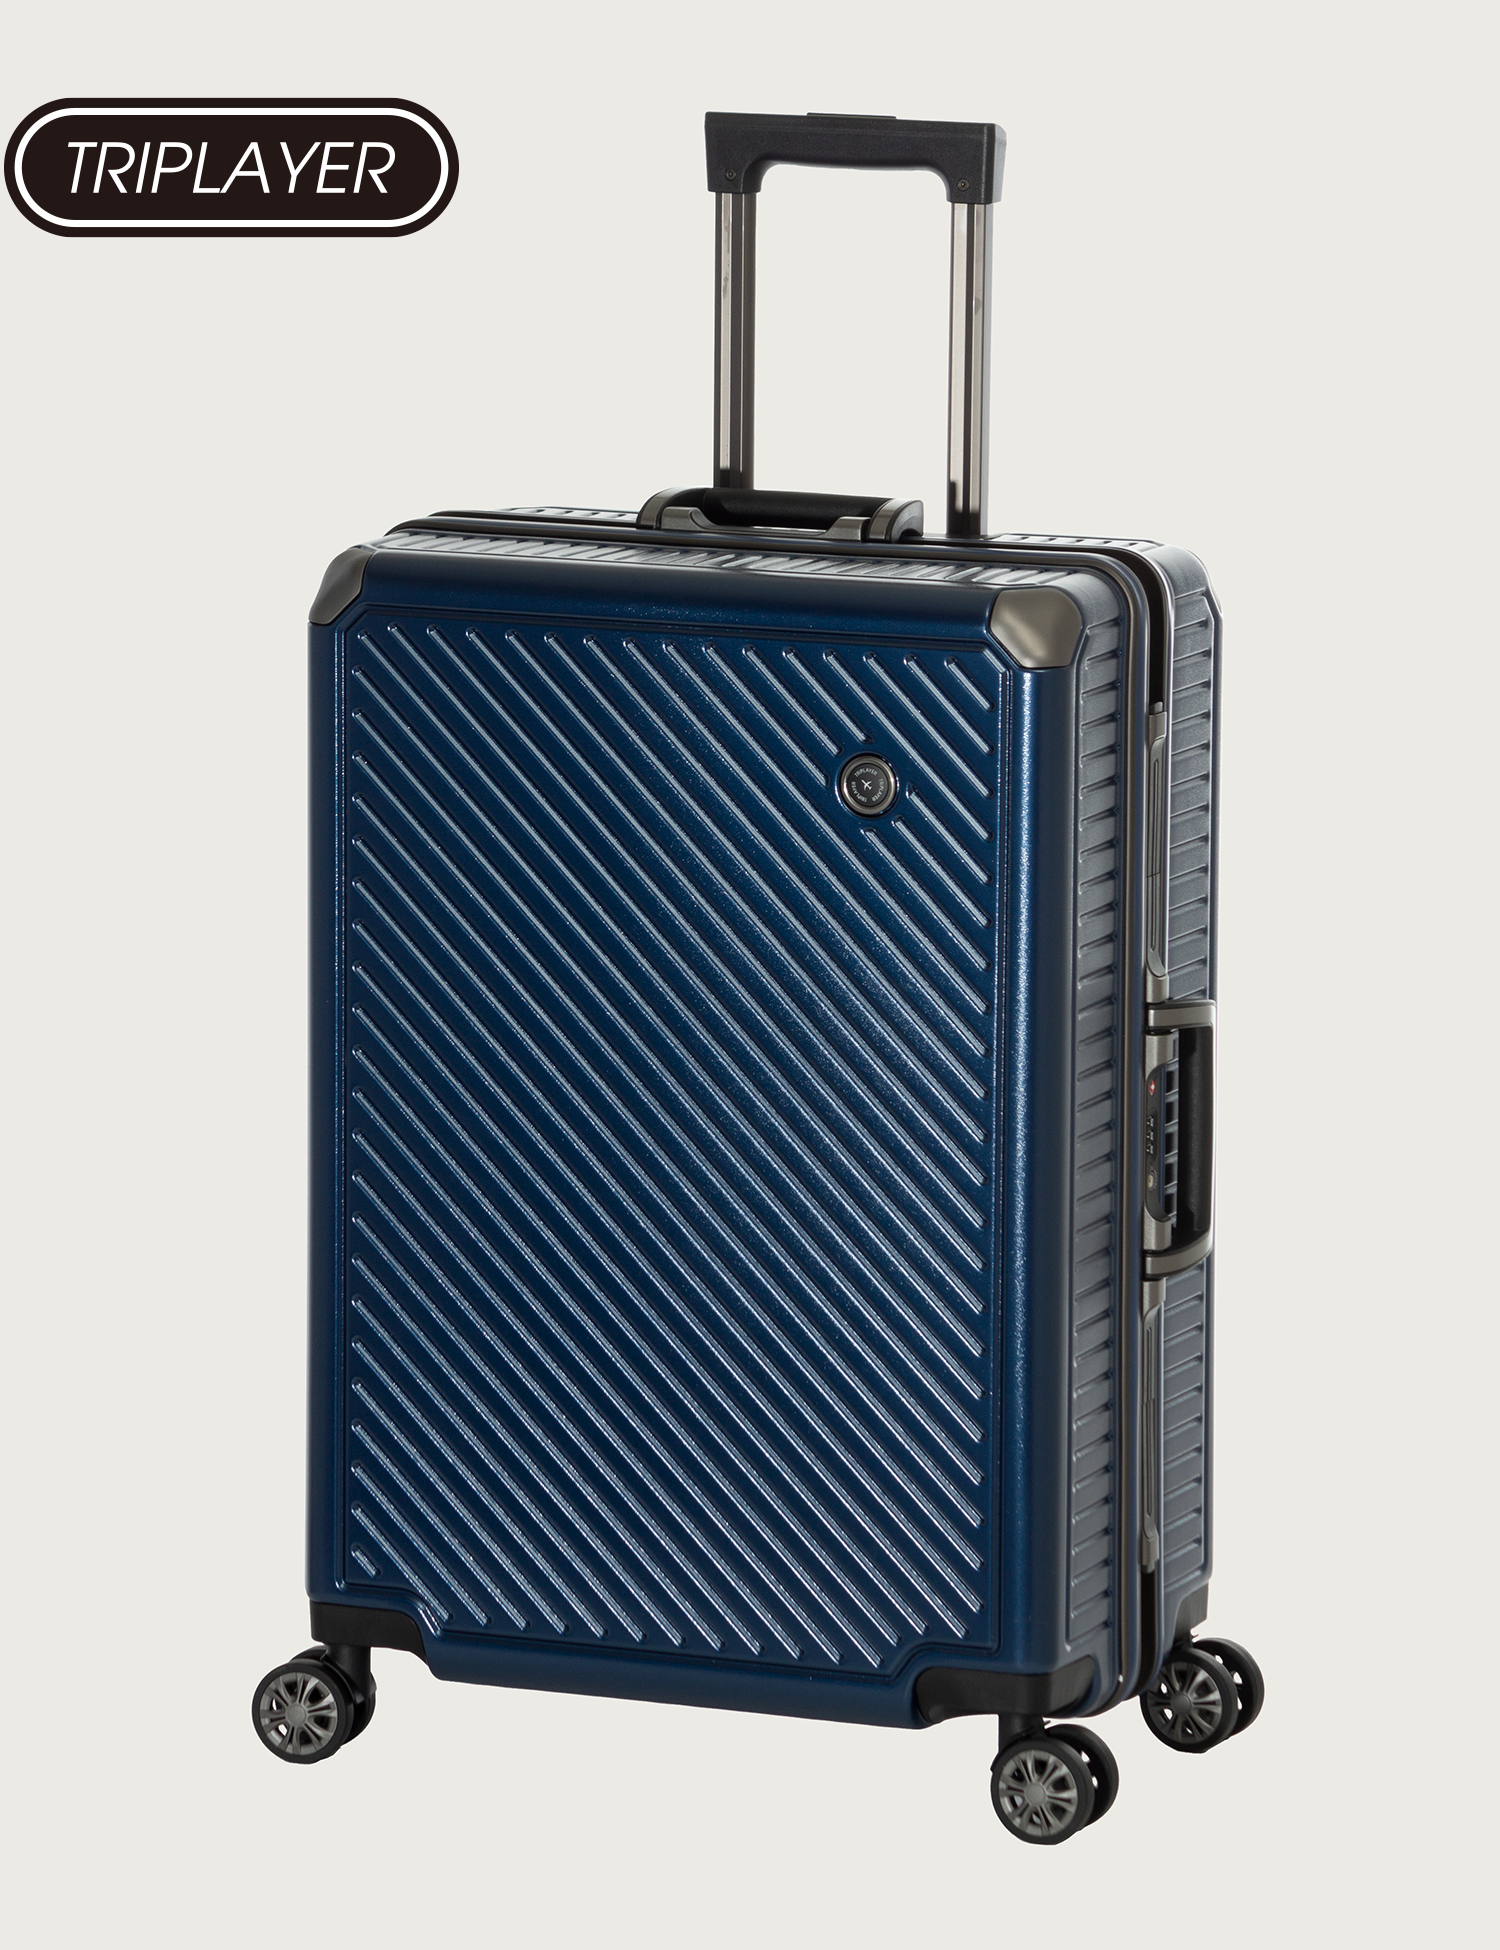 ハードキャリー | アジア・ラゲージ 公式サイト | Asia Luggage